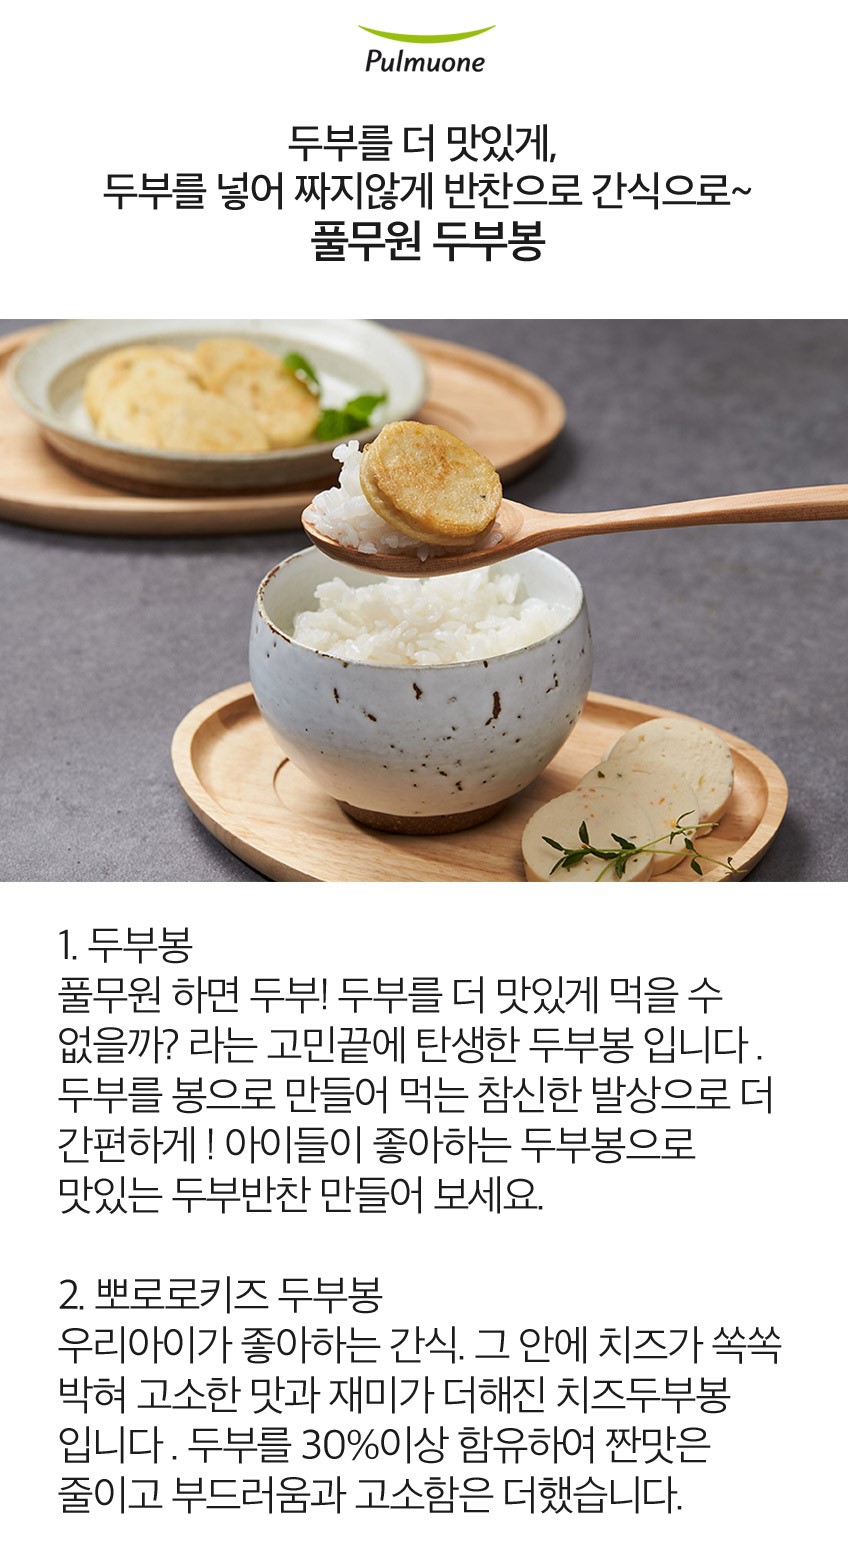 韓國食品-[풀무원] 두부봉 (야채) 180g